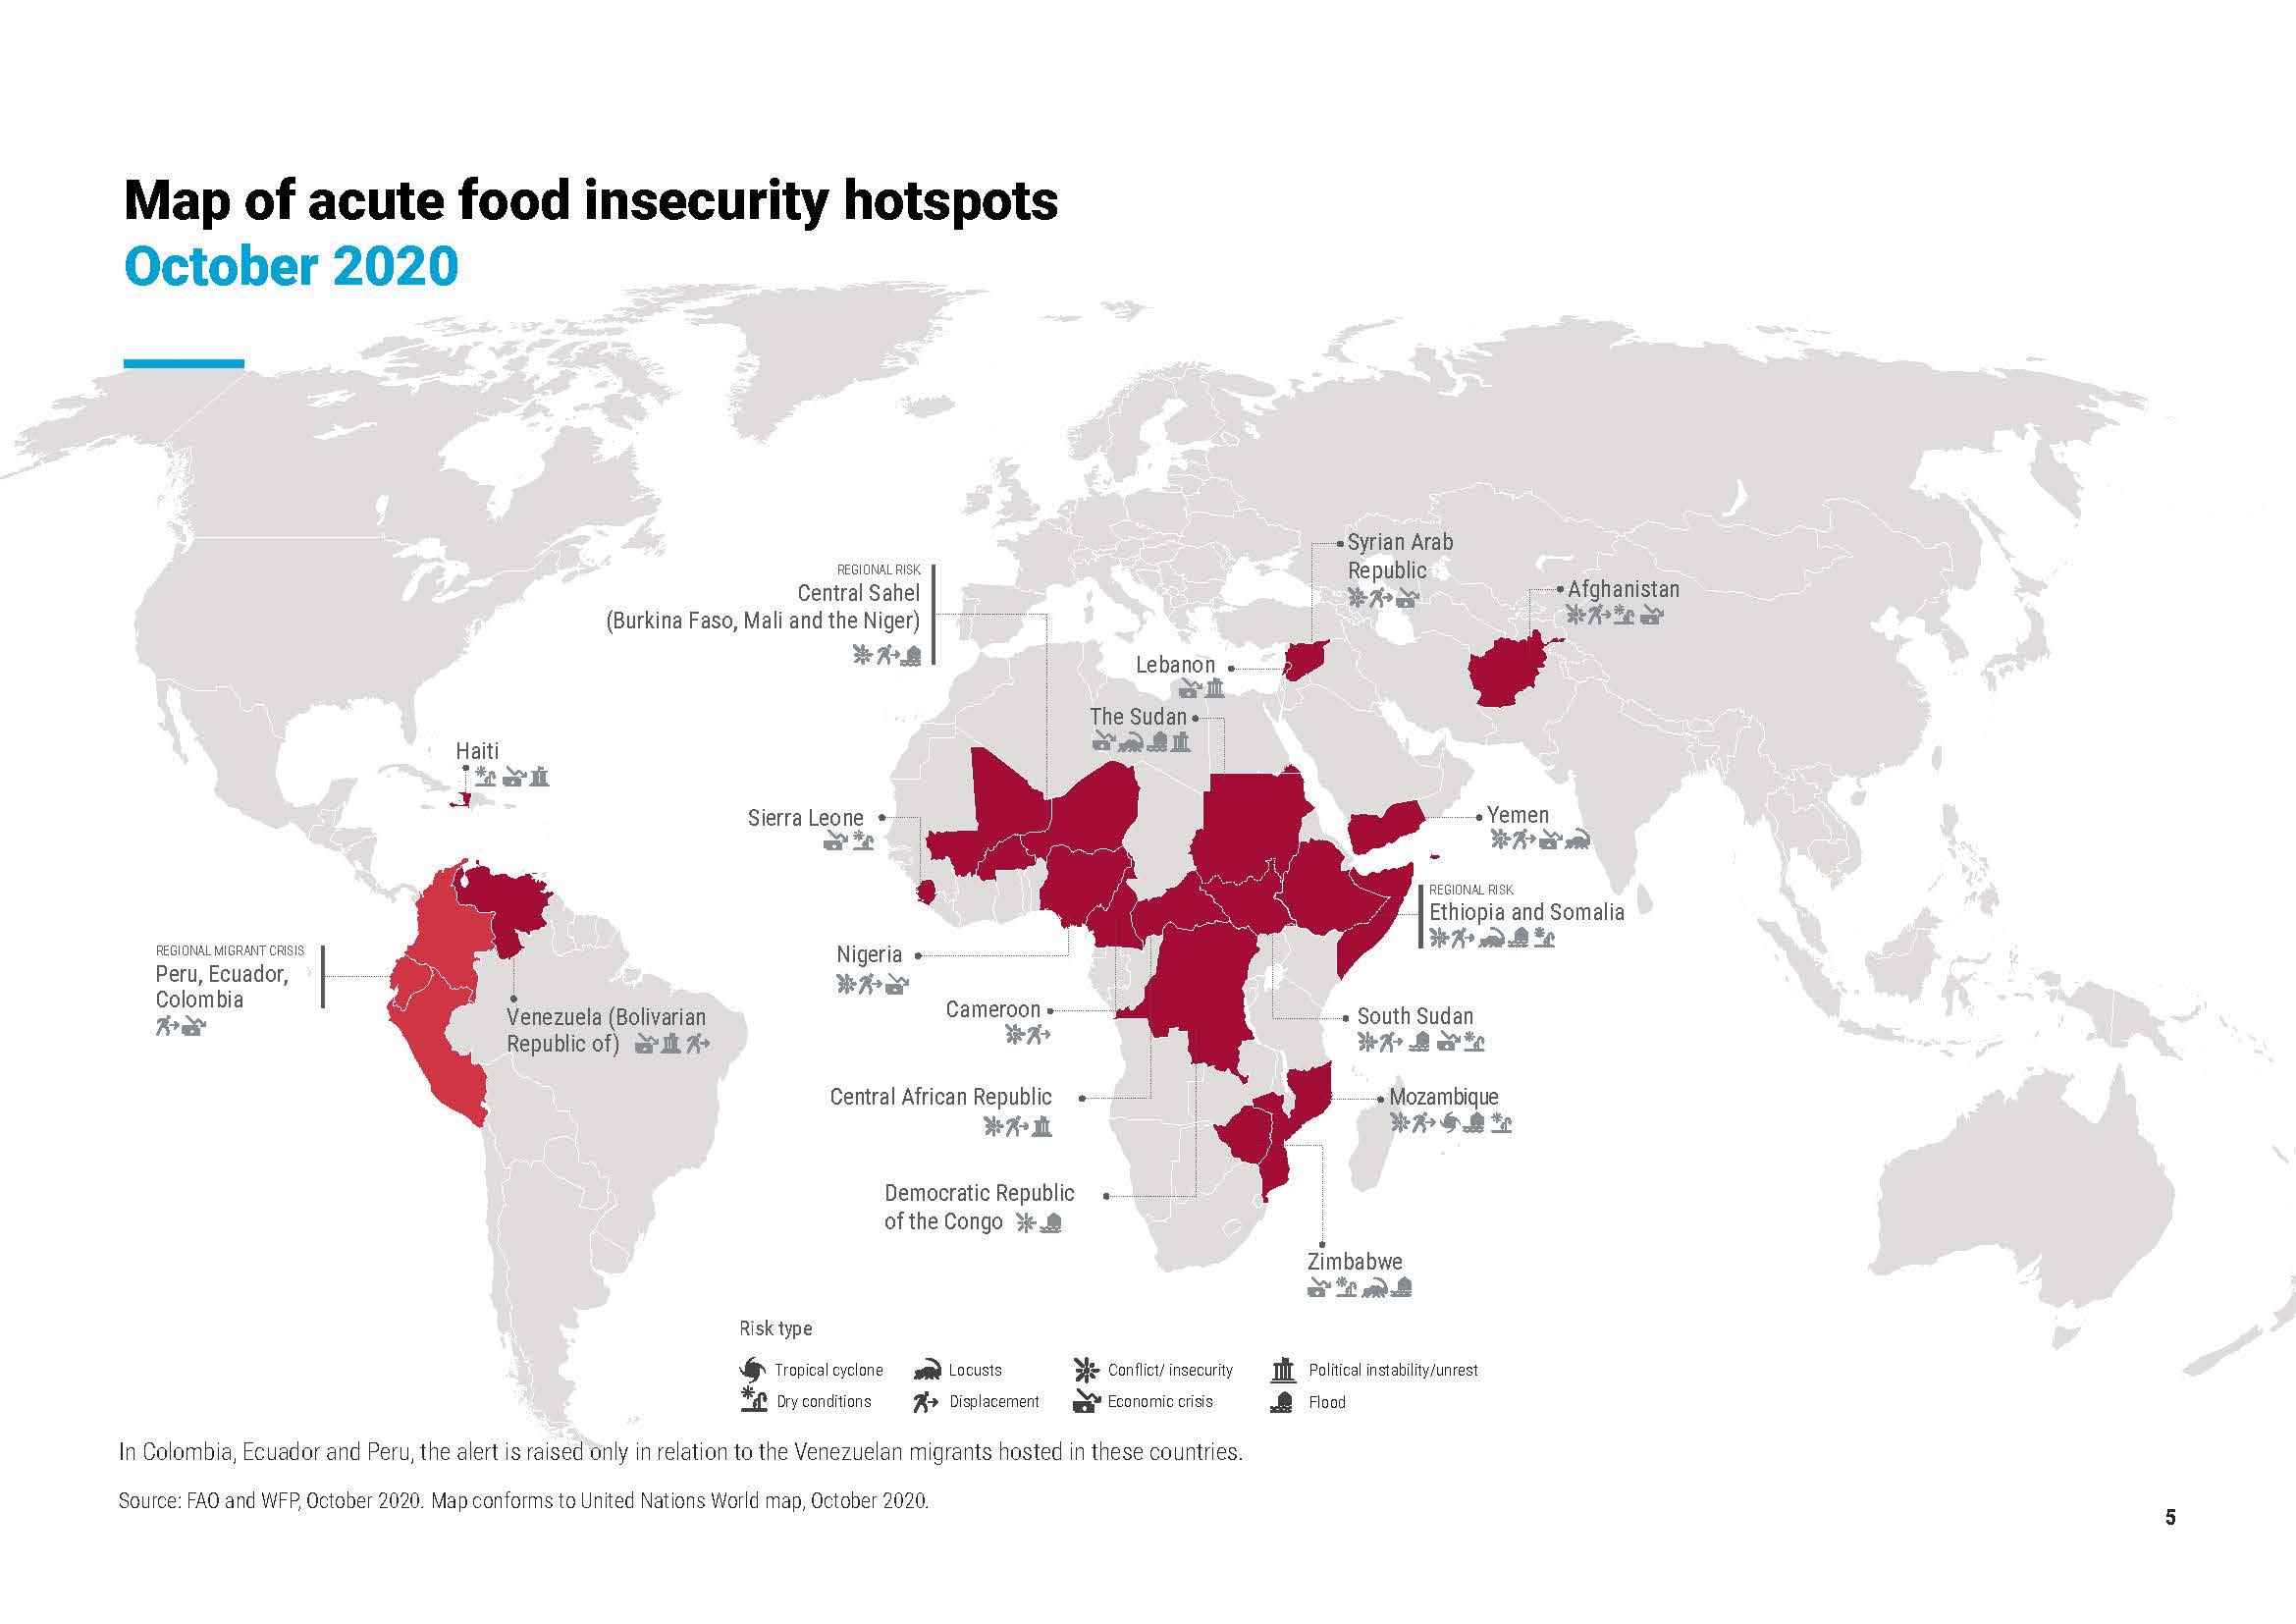 Die Karte zeigt, wo Menschen derzeit akute Ernährungsunsicherheit erleben